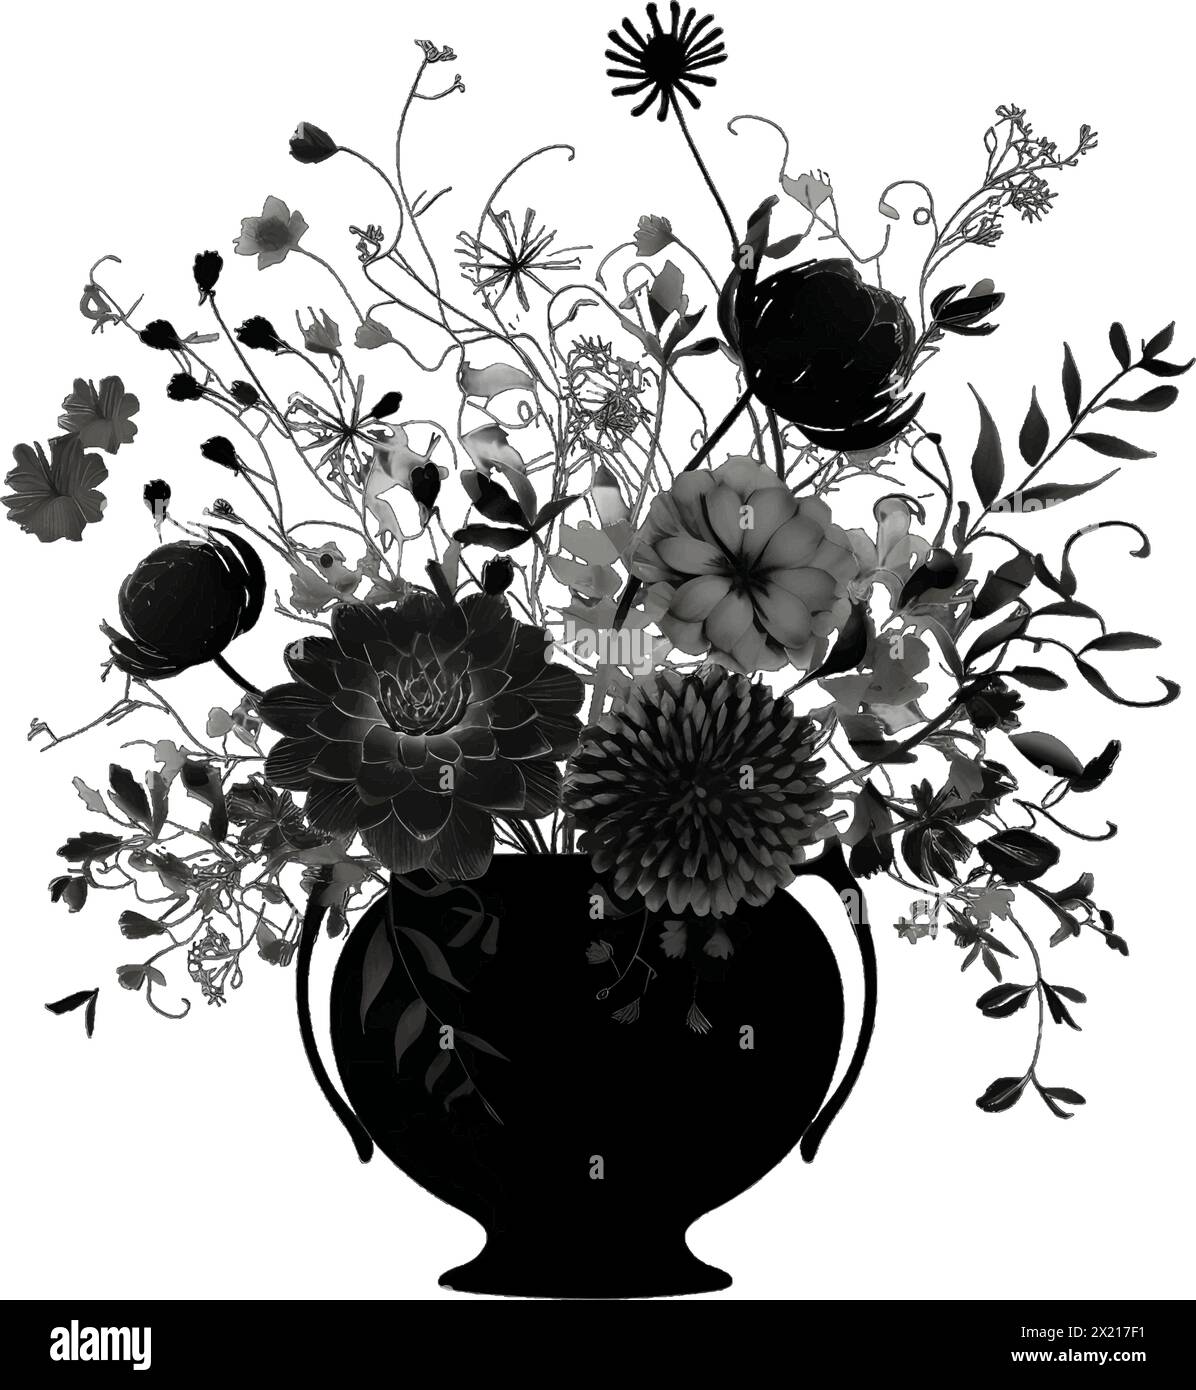 Illustration vectorielle d'un bouquet de fleurs en silhouette noire sur fond blanc propre, capturant des formes gracieuses. Illustration de Vecteur